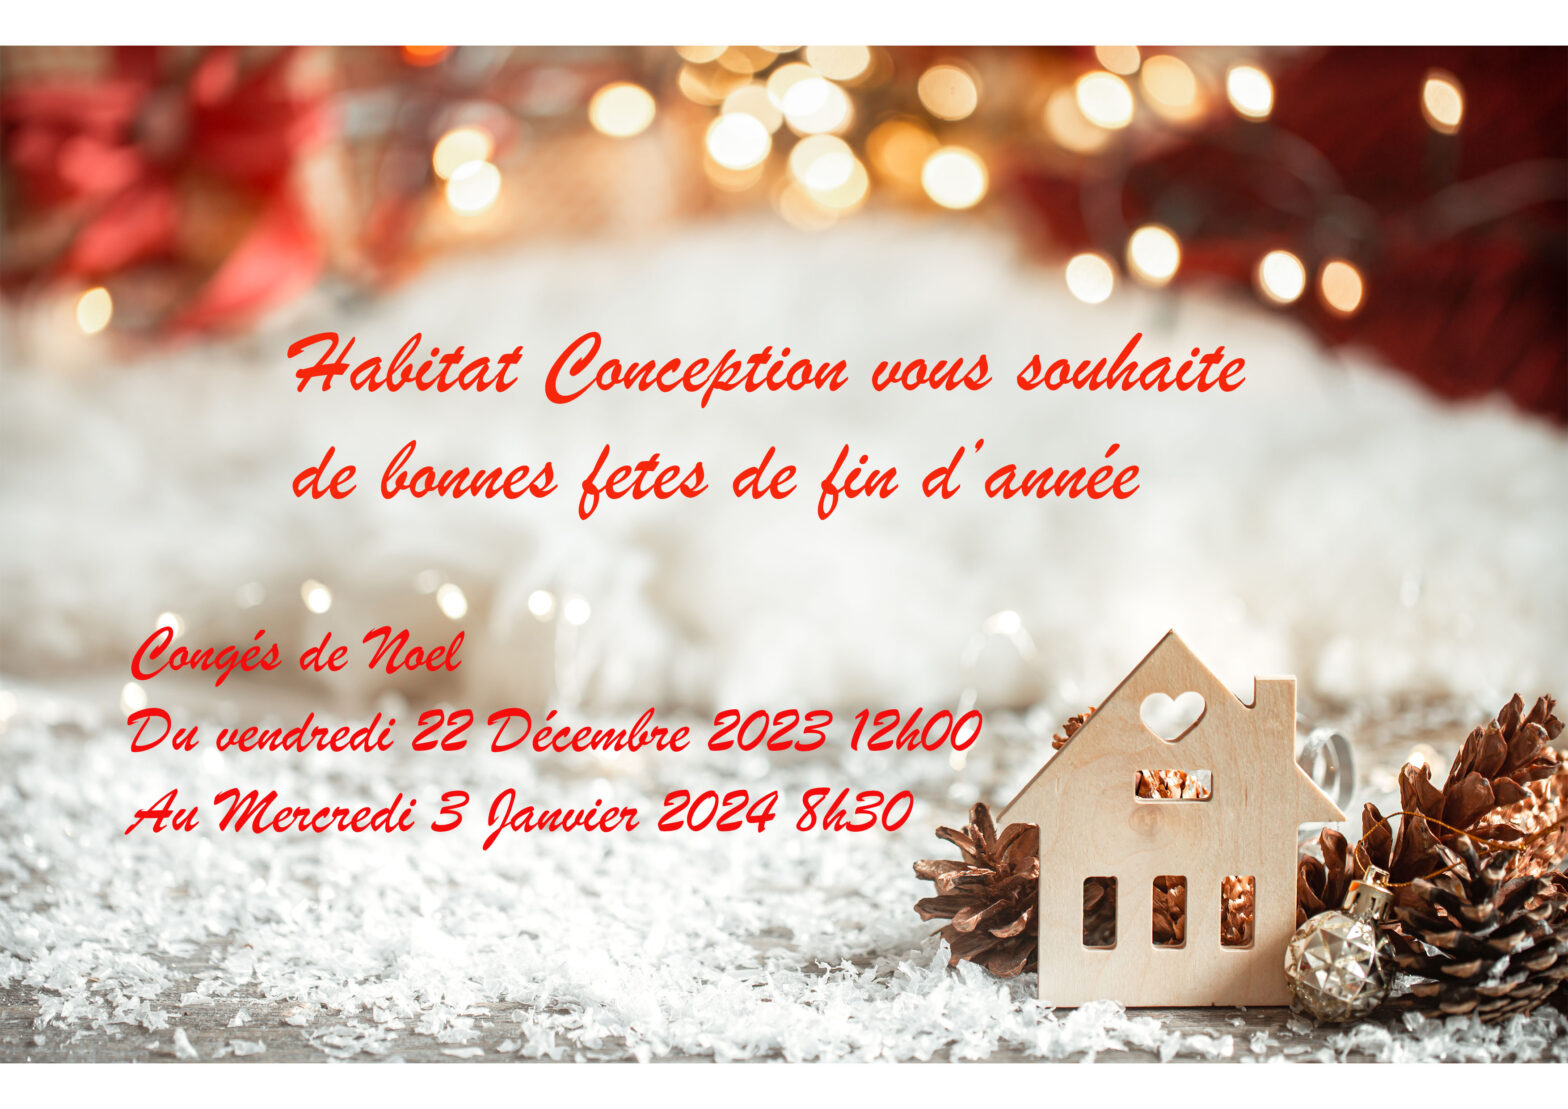 congés de Noël Habitat Conception vous souhaite de bonnes fêtes fin d'année Le bureau sera fermé du Vendredi 22 Décembre 2023 au Mercredi 3 Janvier 2024